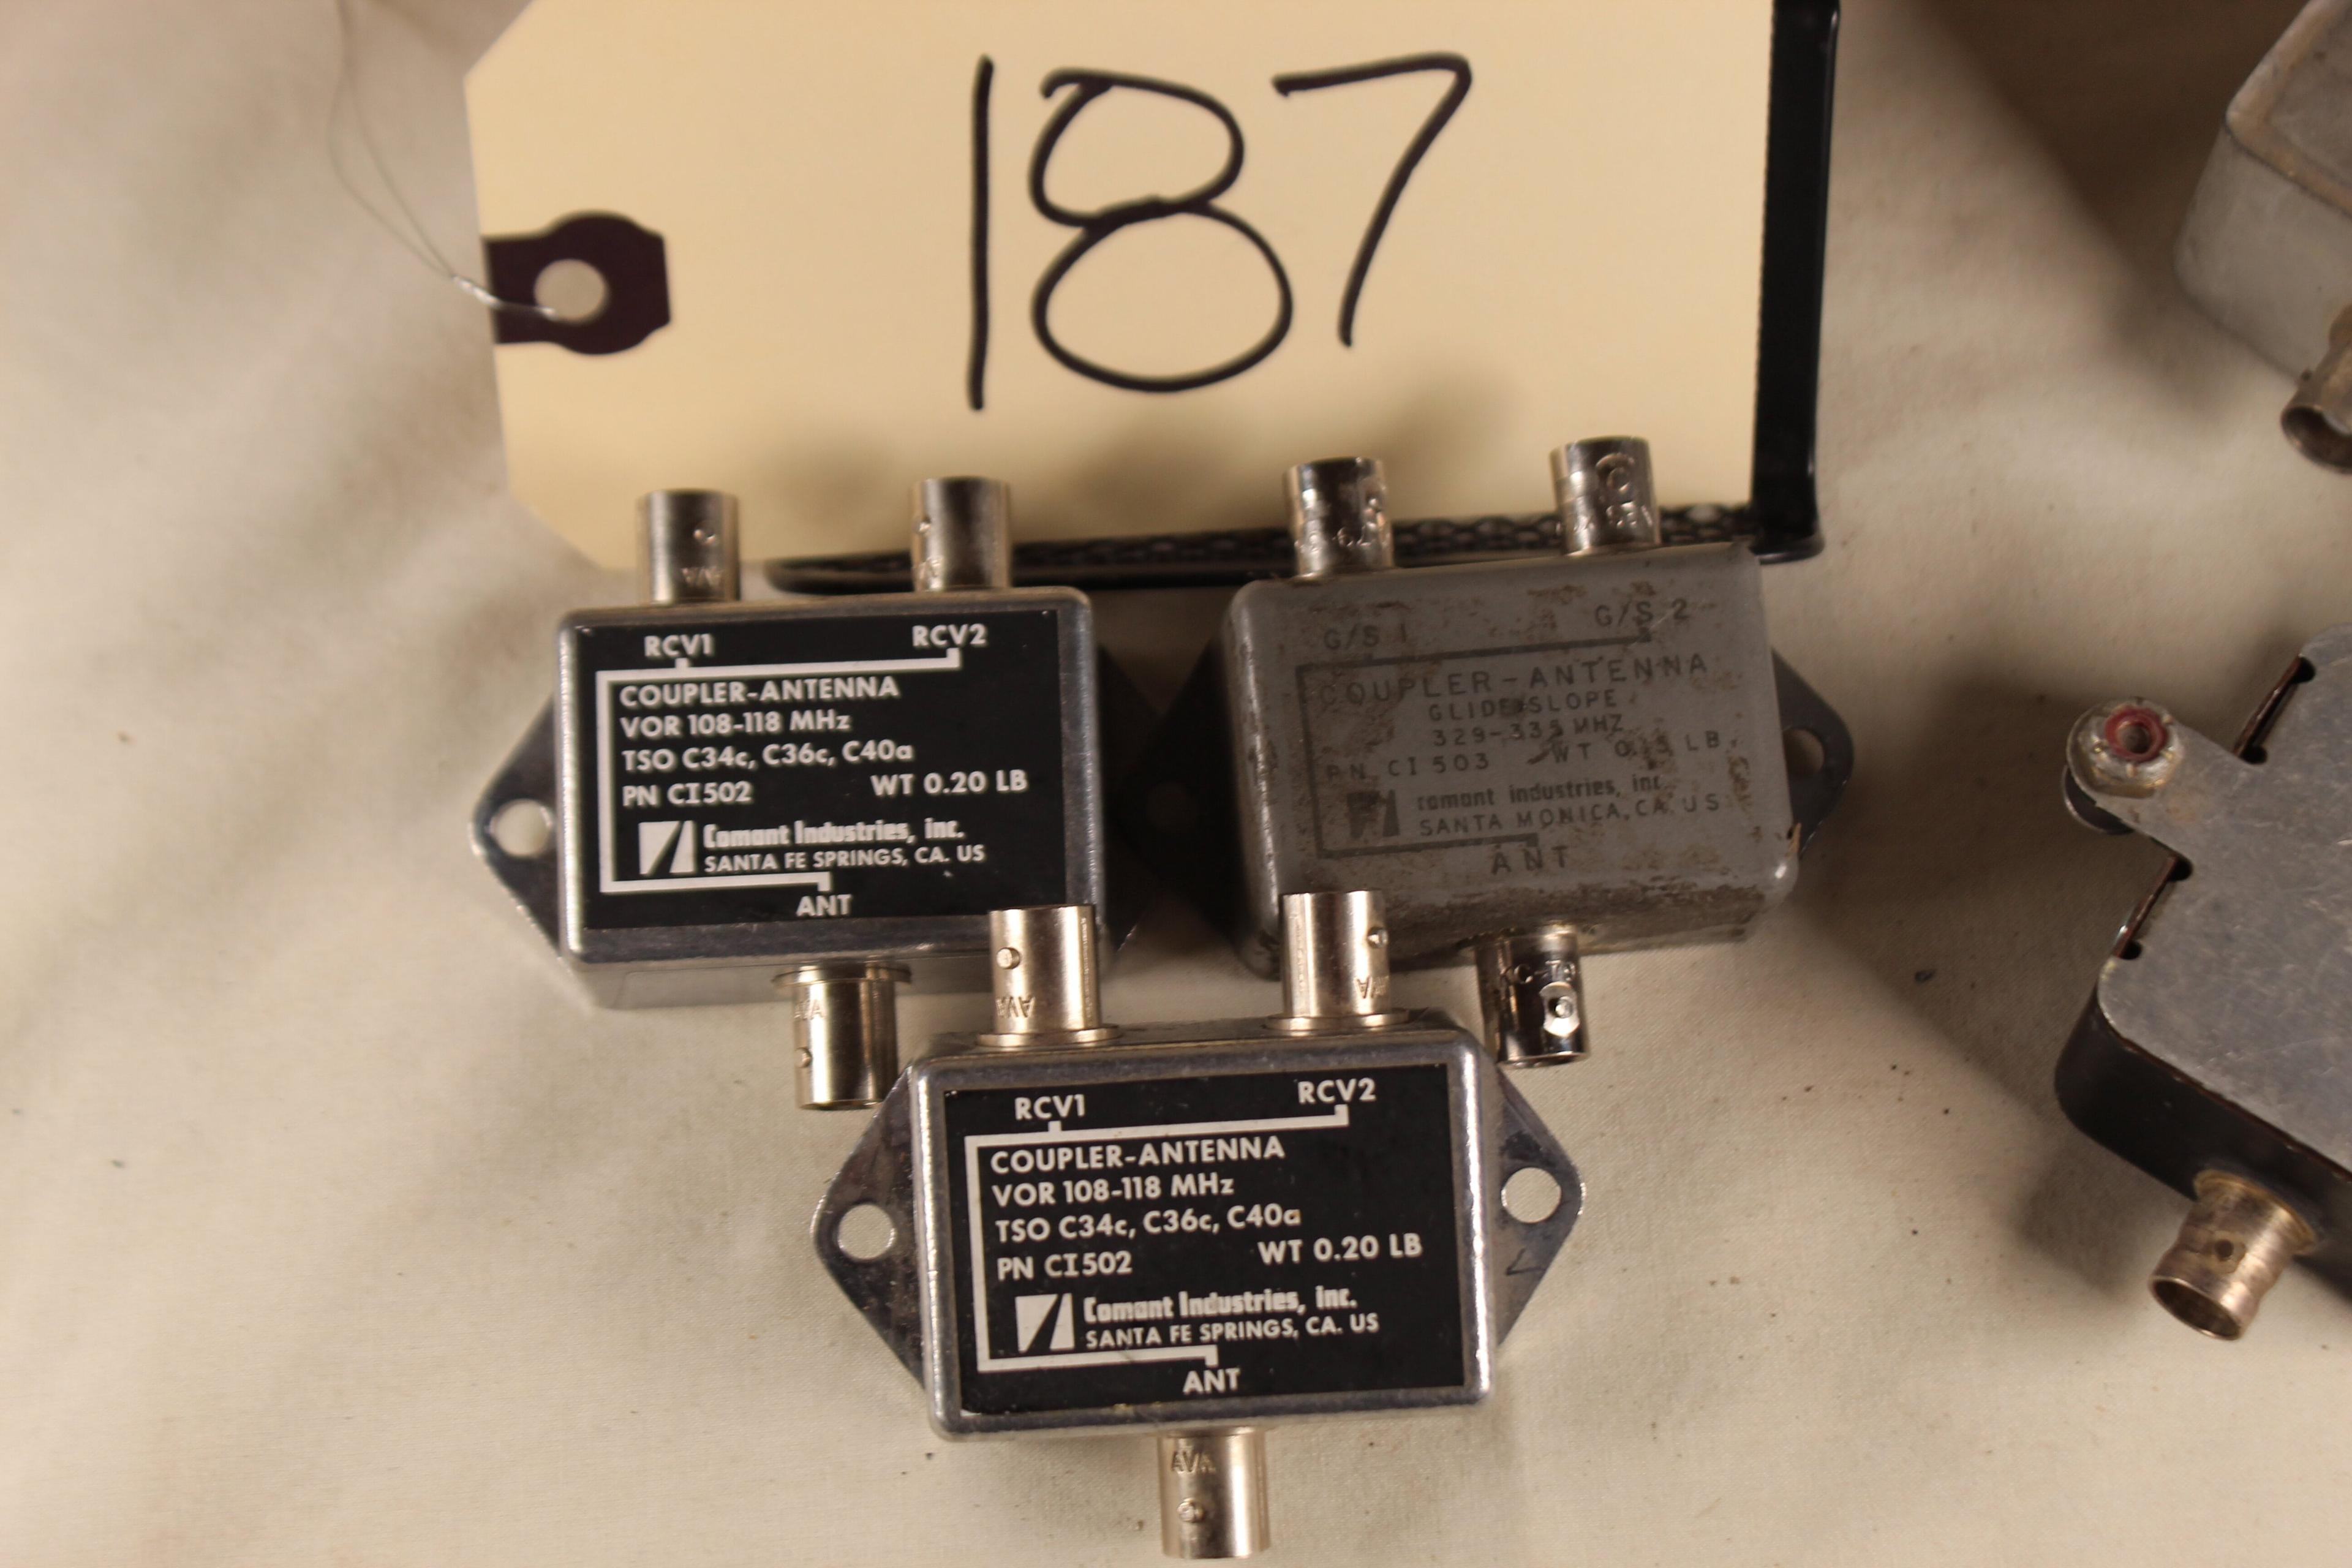 Lot of 3 Comant Coupler-Antenna PN CI502/Lot of 3 Dorne & Margolin NAV Diplexer